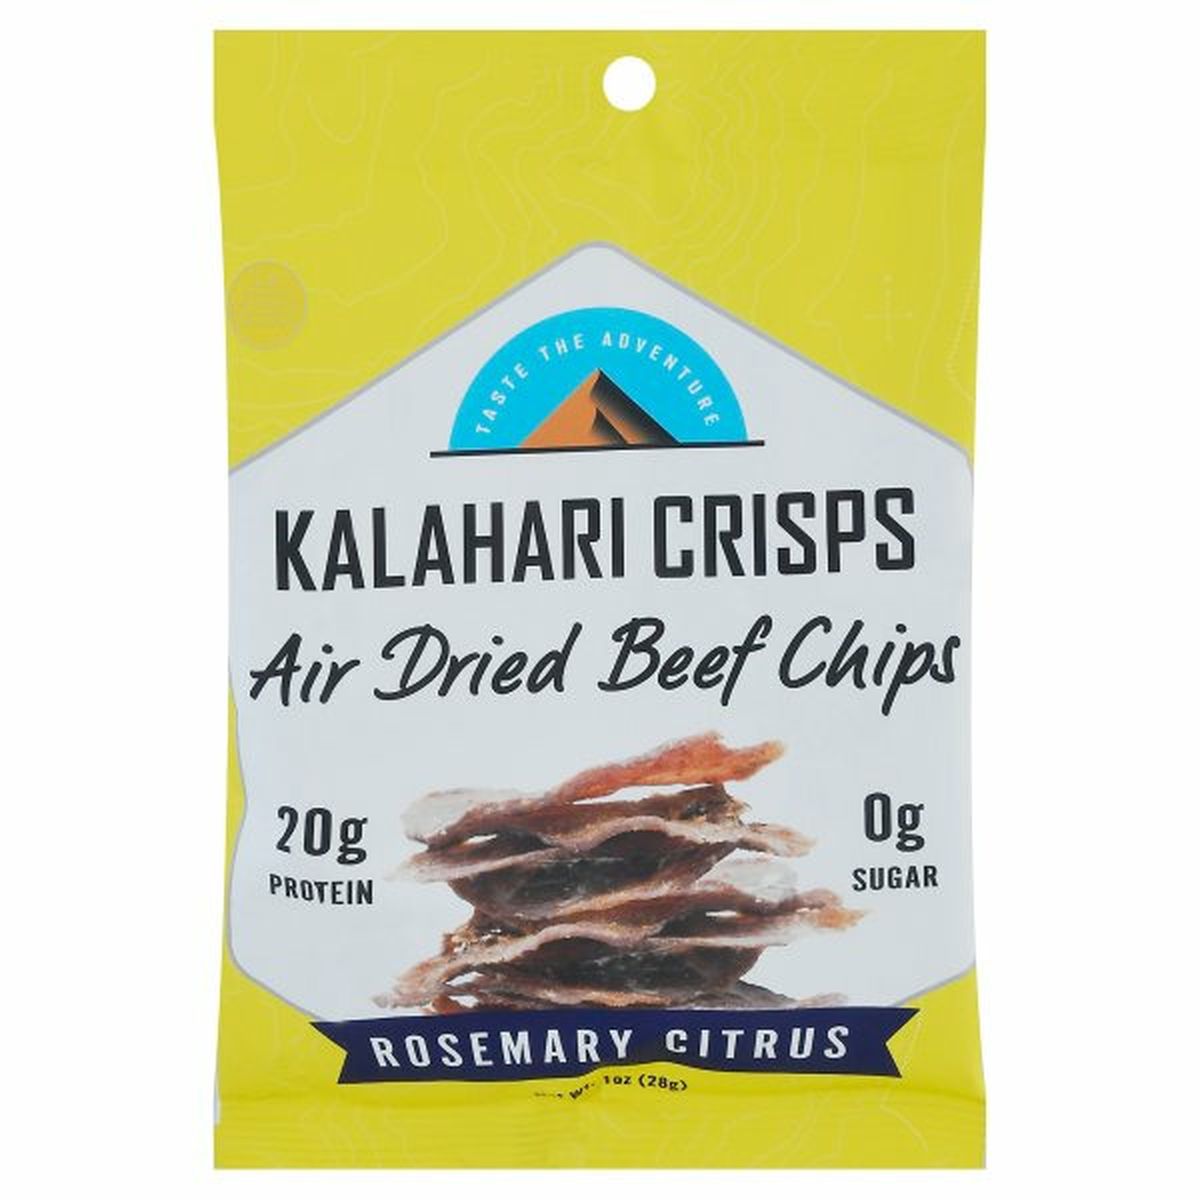 Calories in Kalahari Crisps Beef Chips, Rosemary Citrus